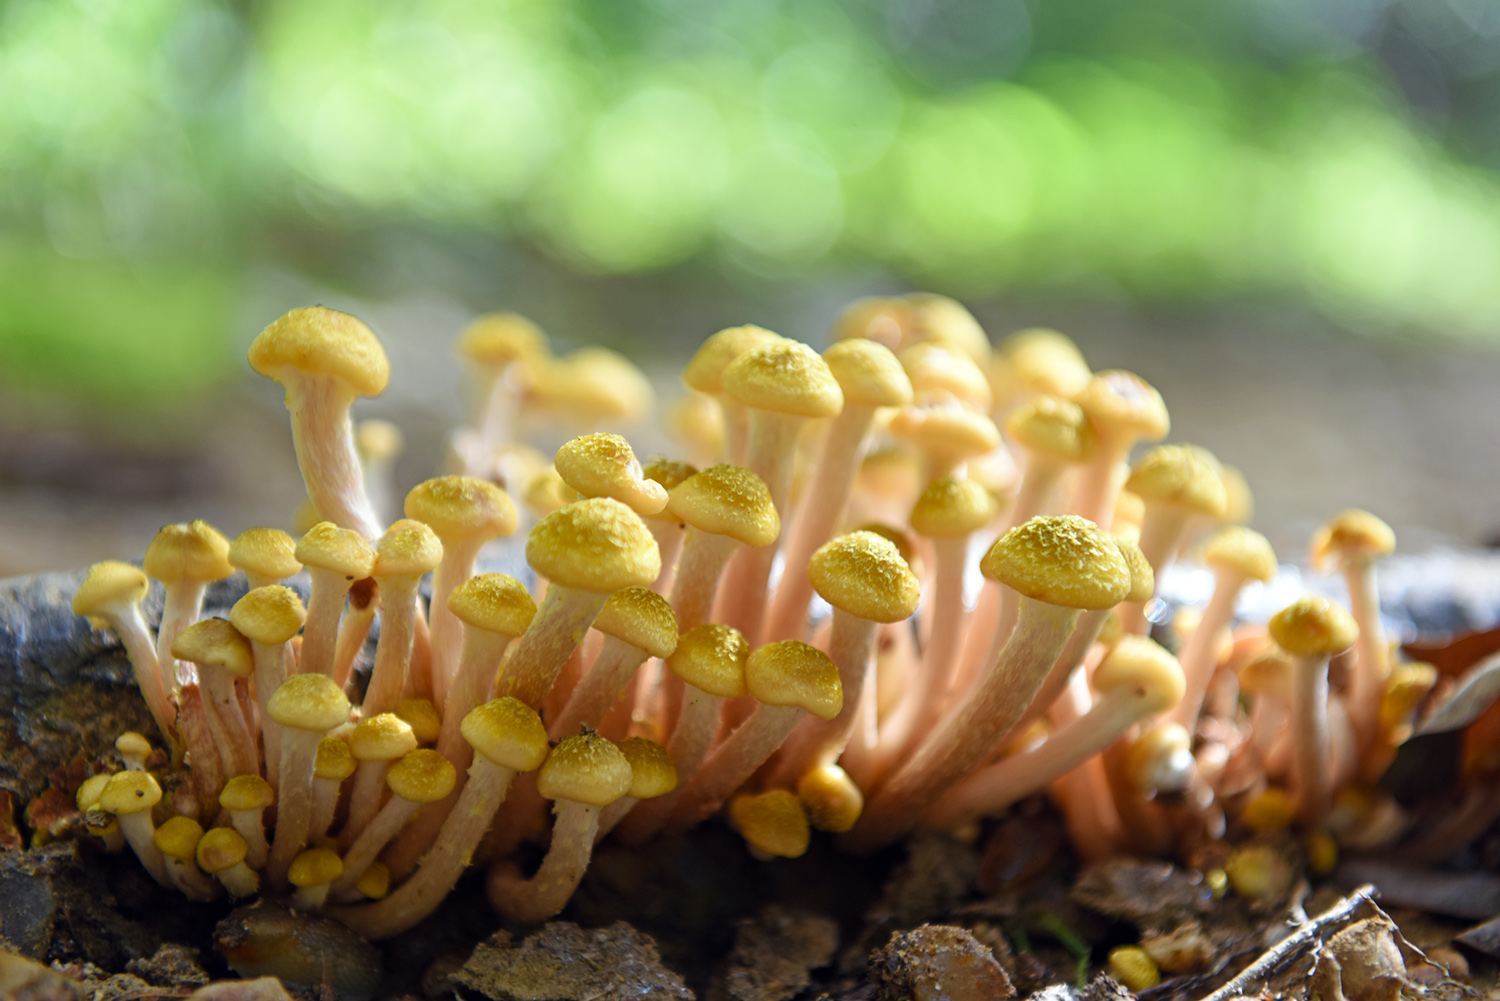 Mushrooms_Fungus_Fungi_Woodland_Forest_Floor.jpg